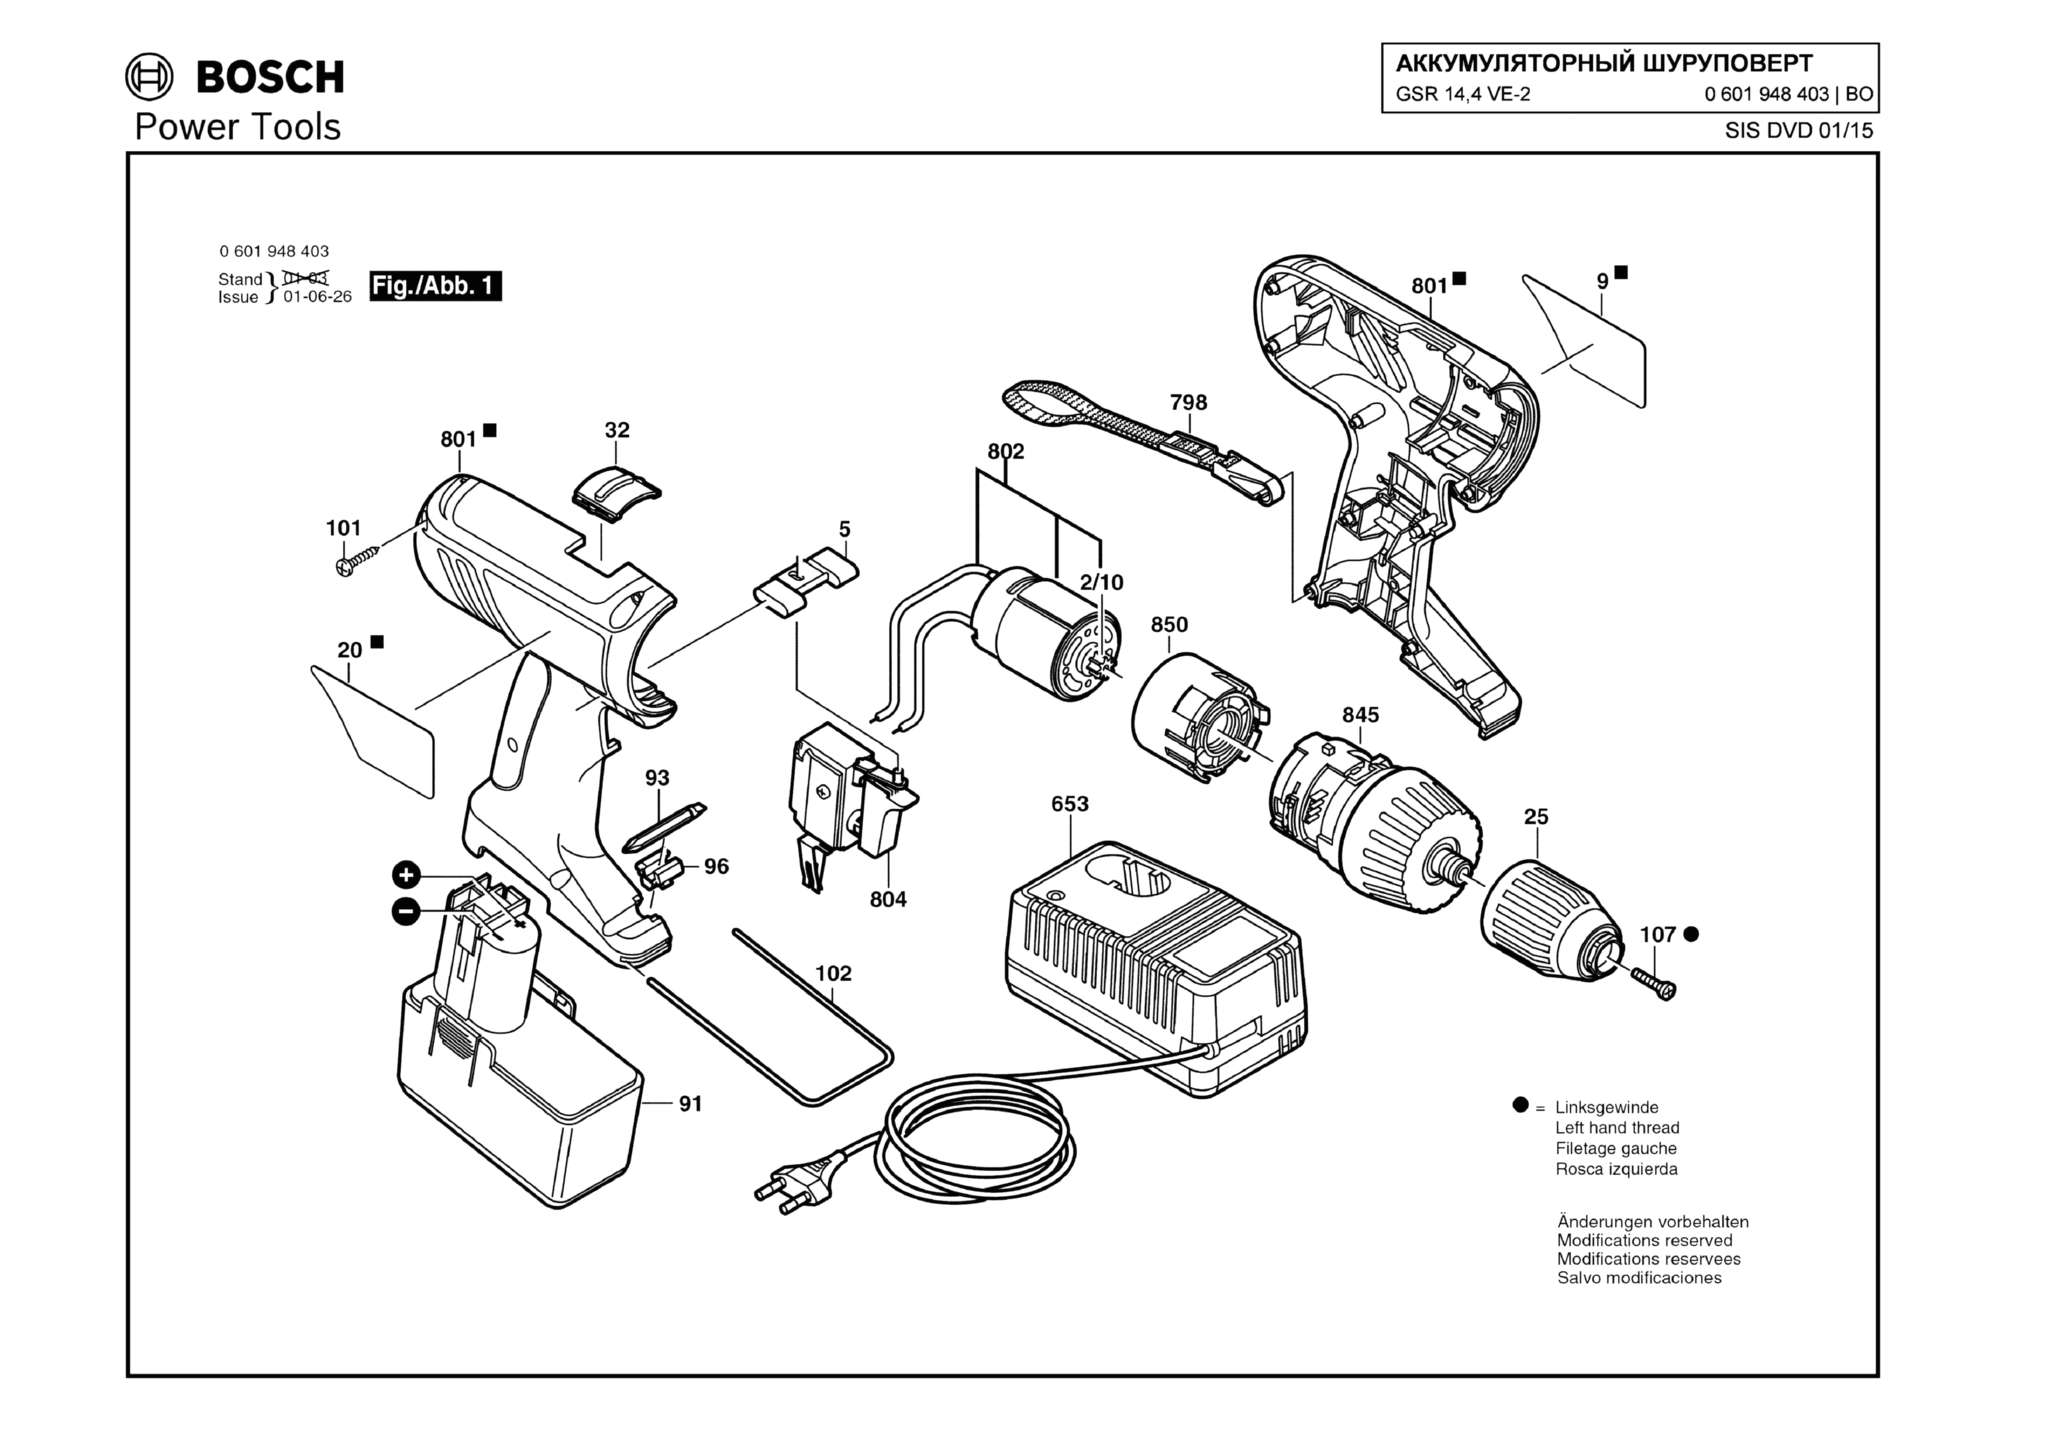 Запчасти, схема и деталировка Bosch GSR 14,4 VE-2 (ТИП 0601948403)